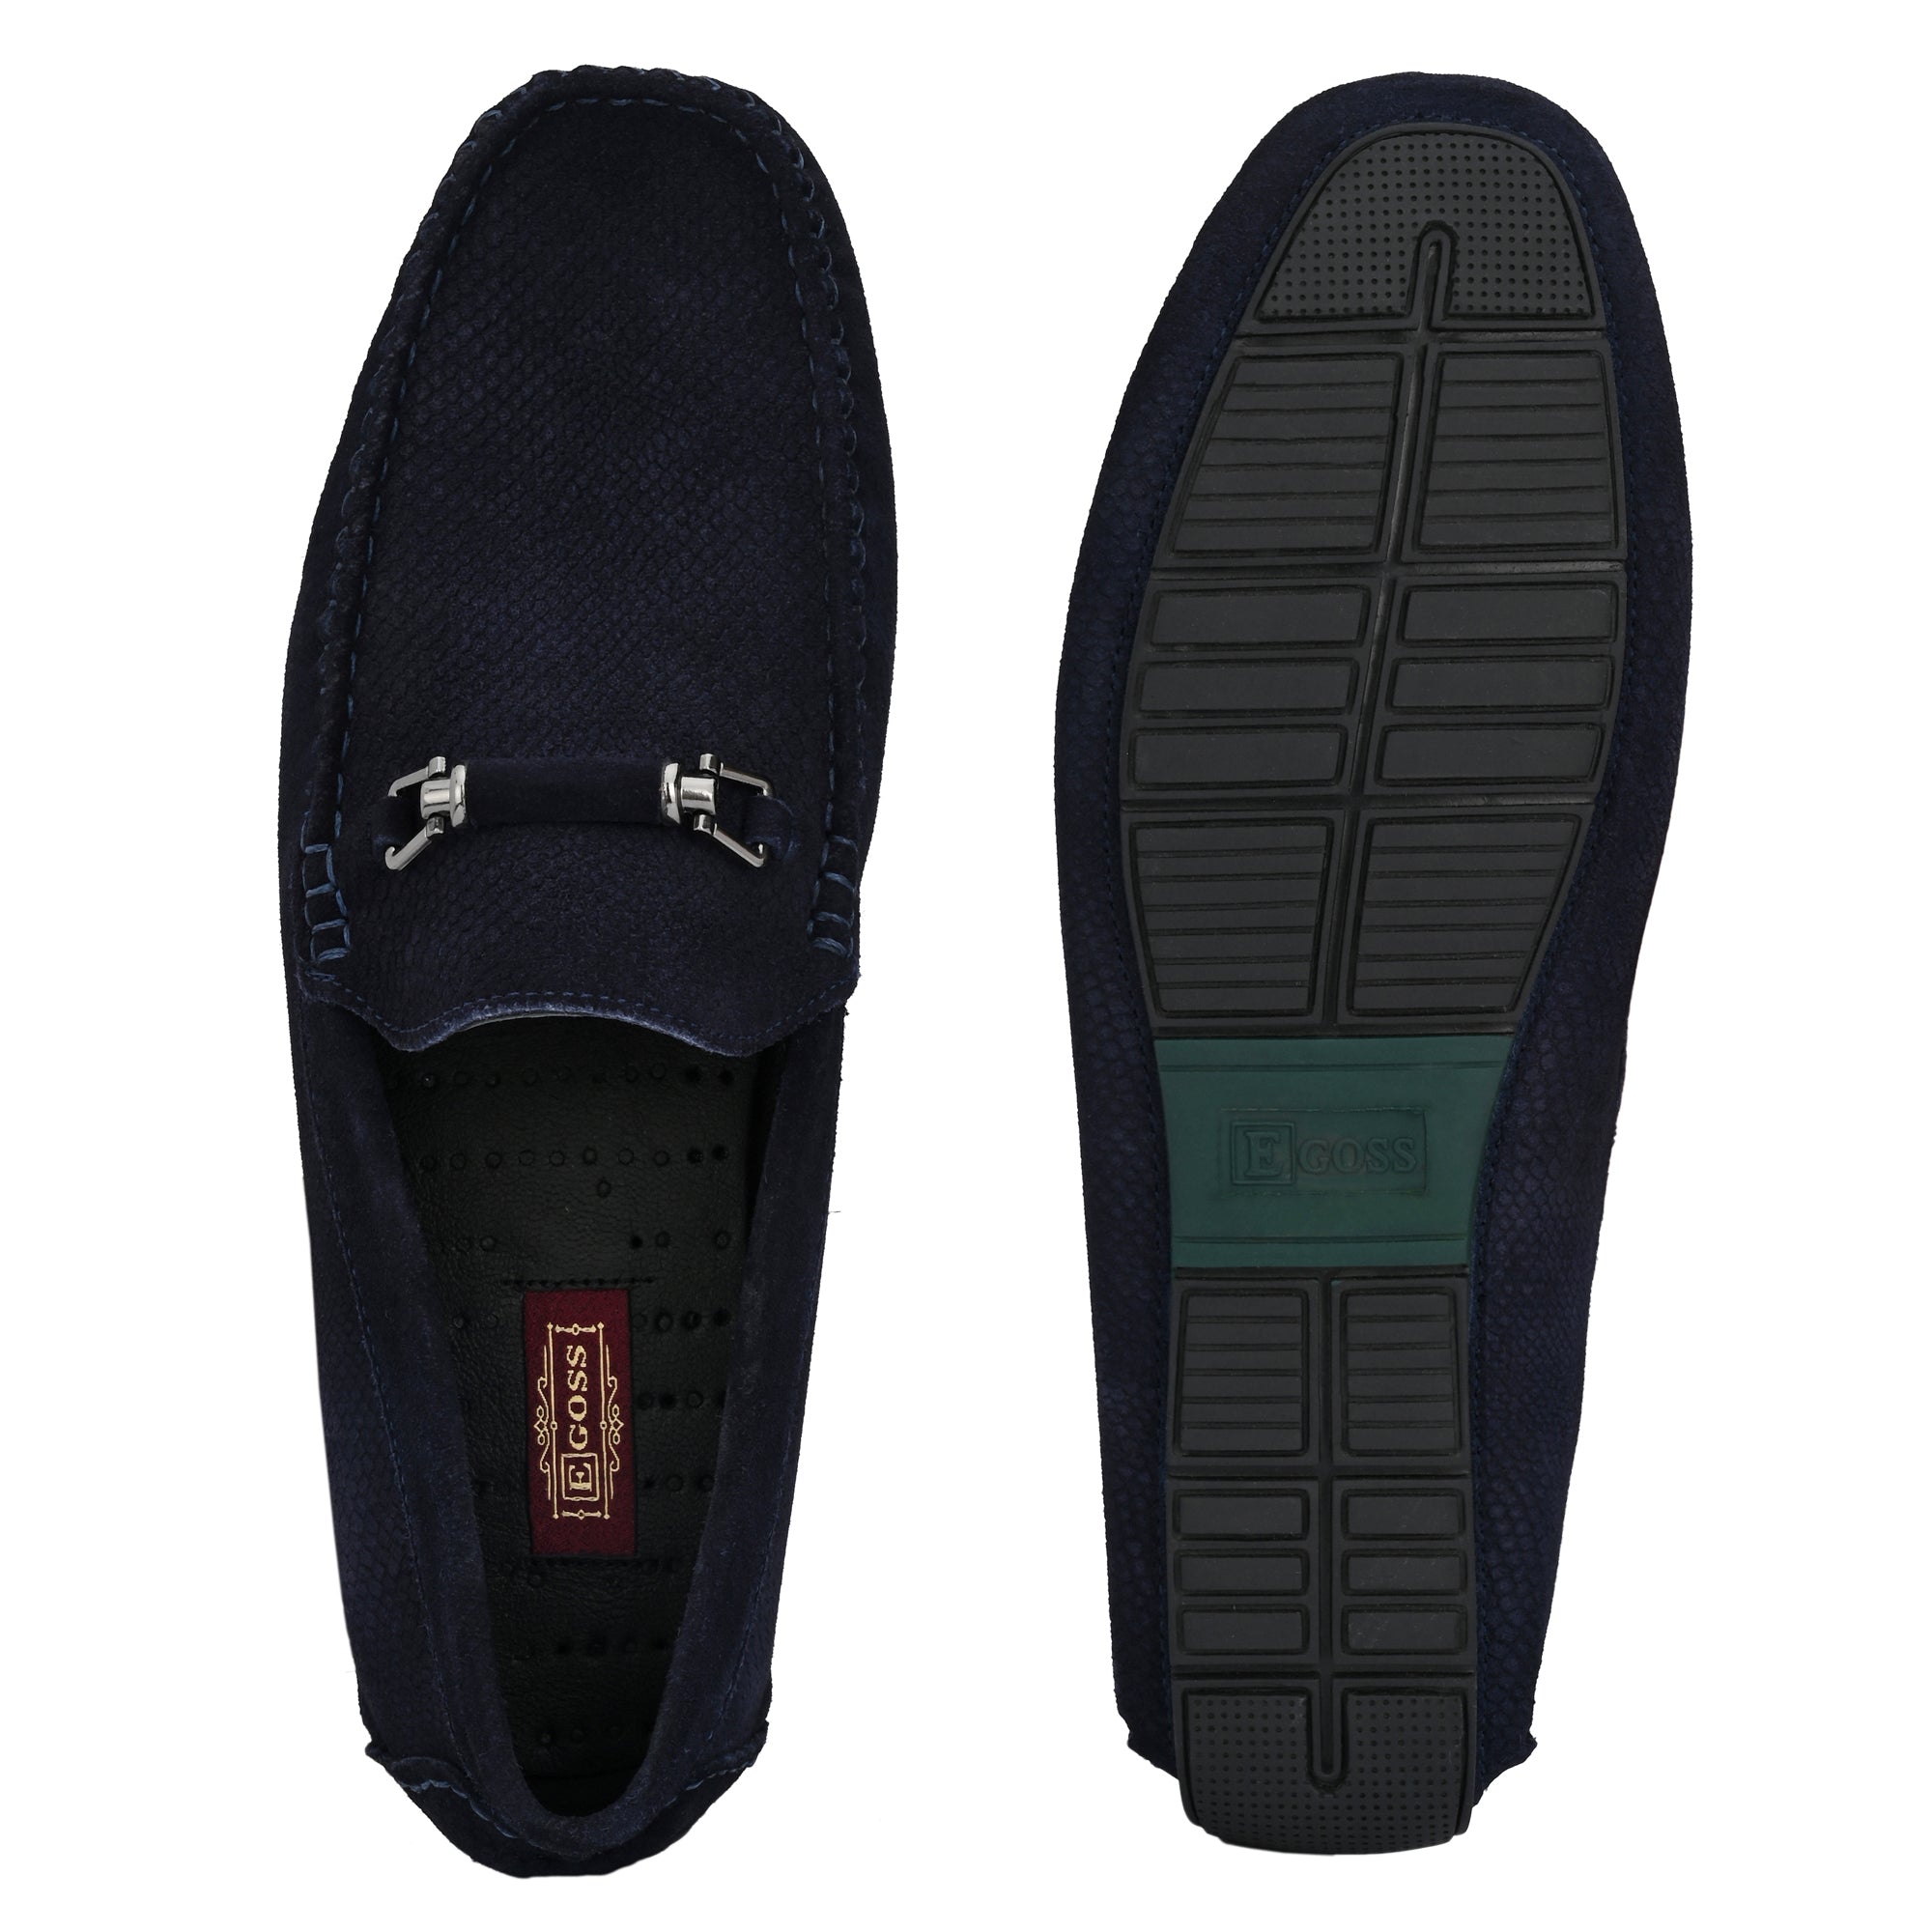 Egoss Leather Formal Slip Shoes On For Men